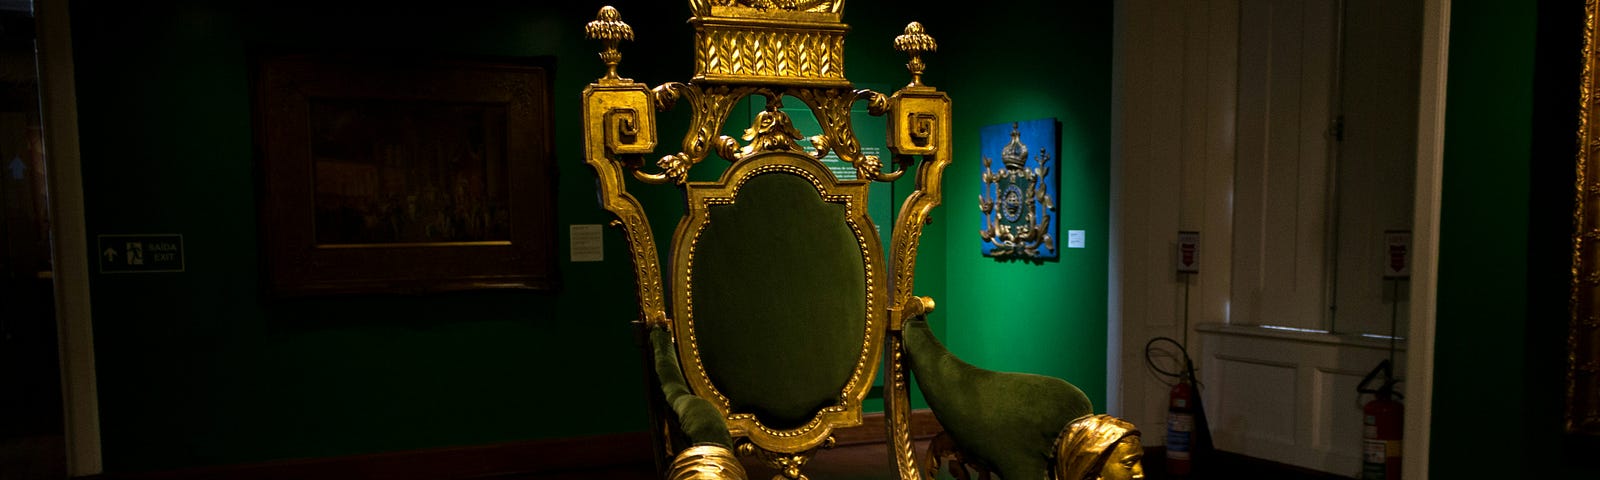 A gold Throne